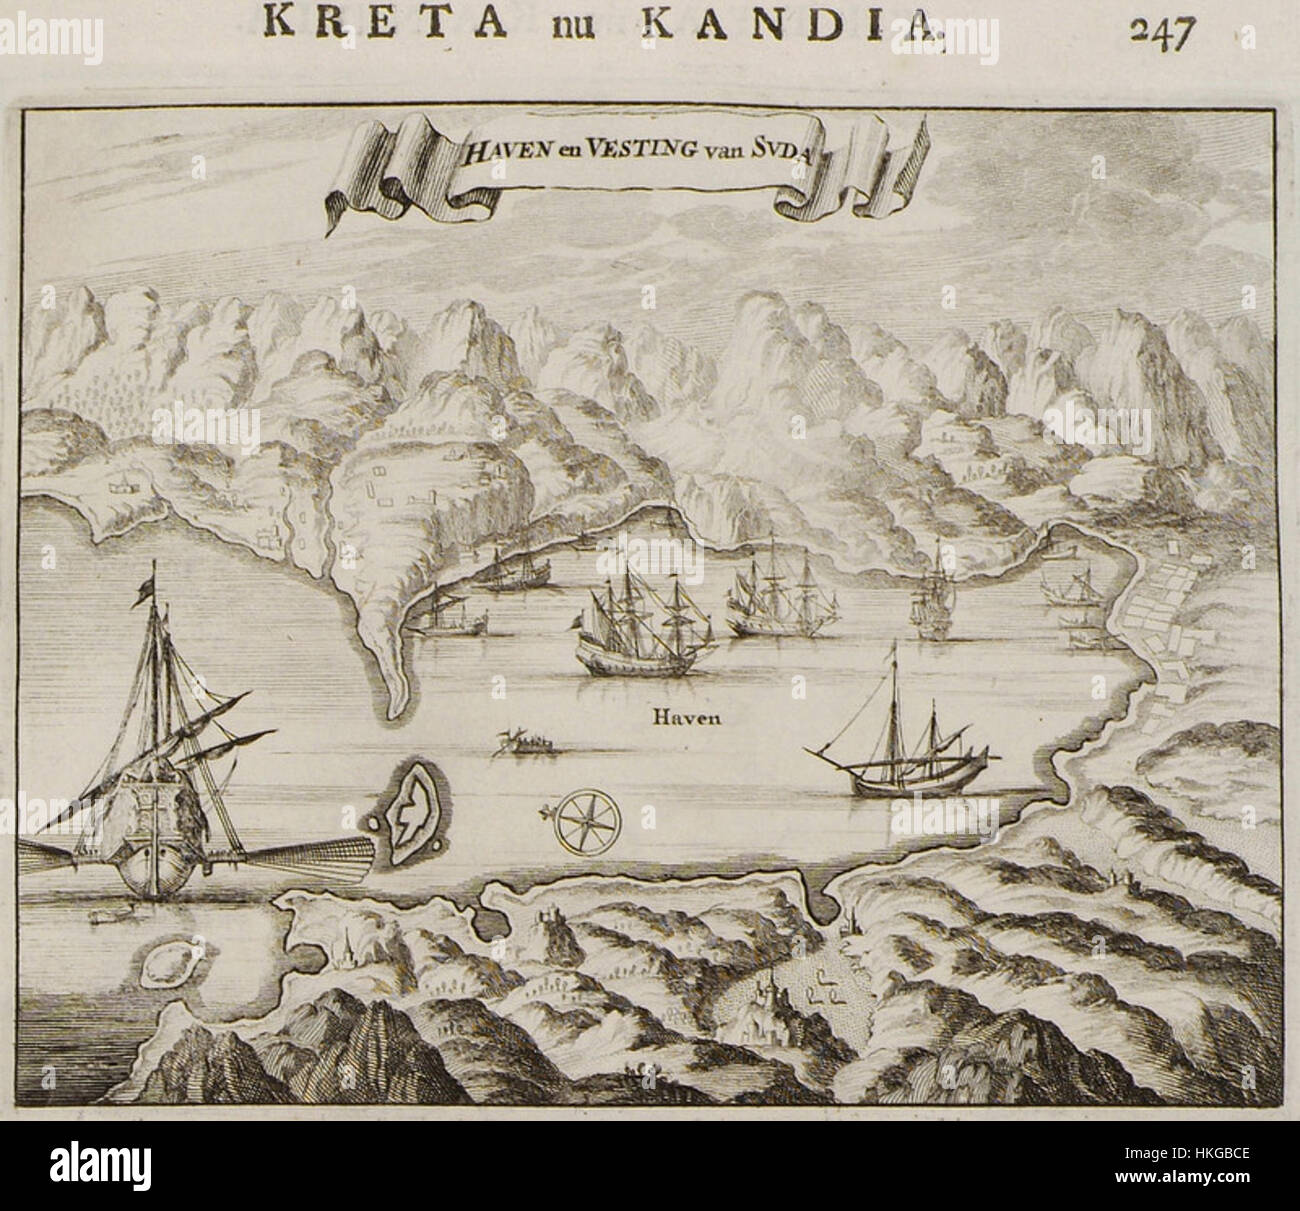 Haven en Vesting van Suda   Dapper Olfert   1688 Stock Photo